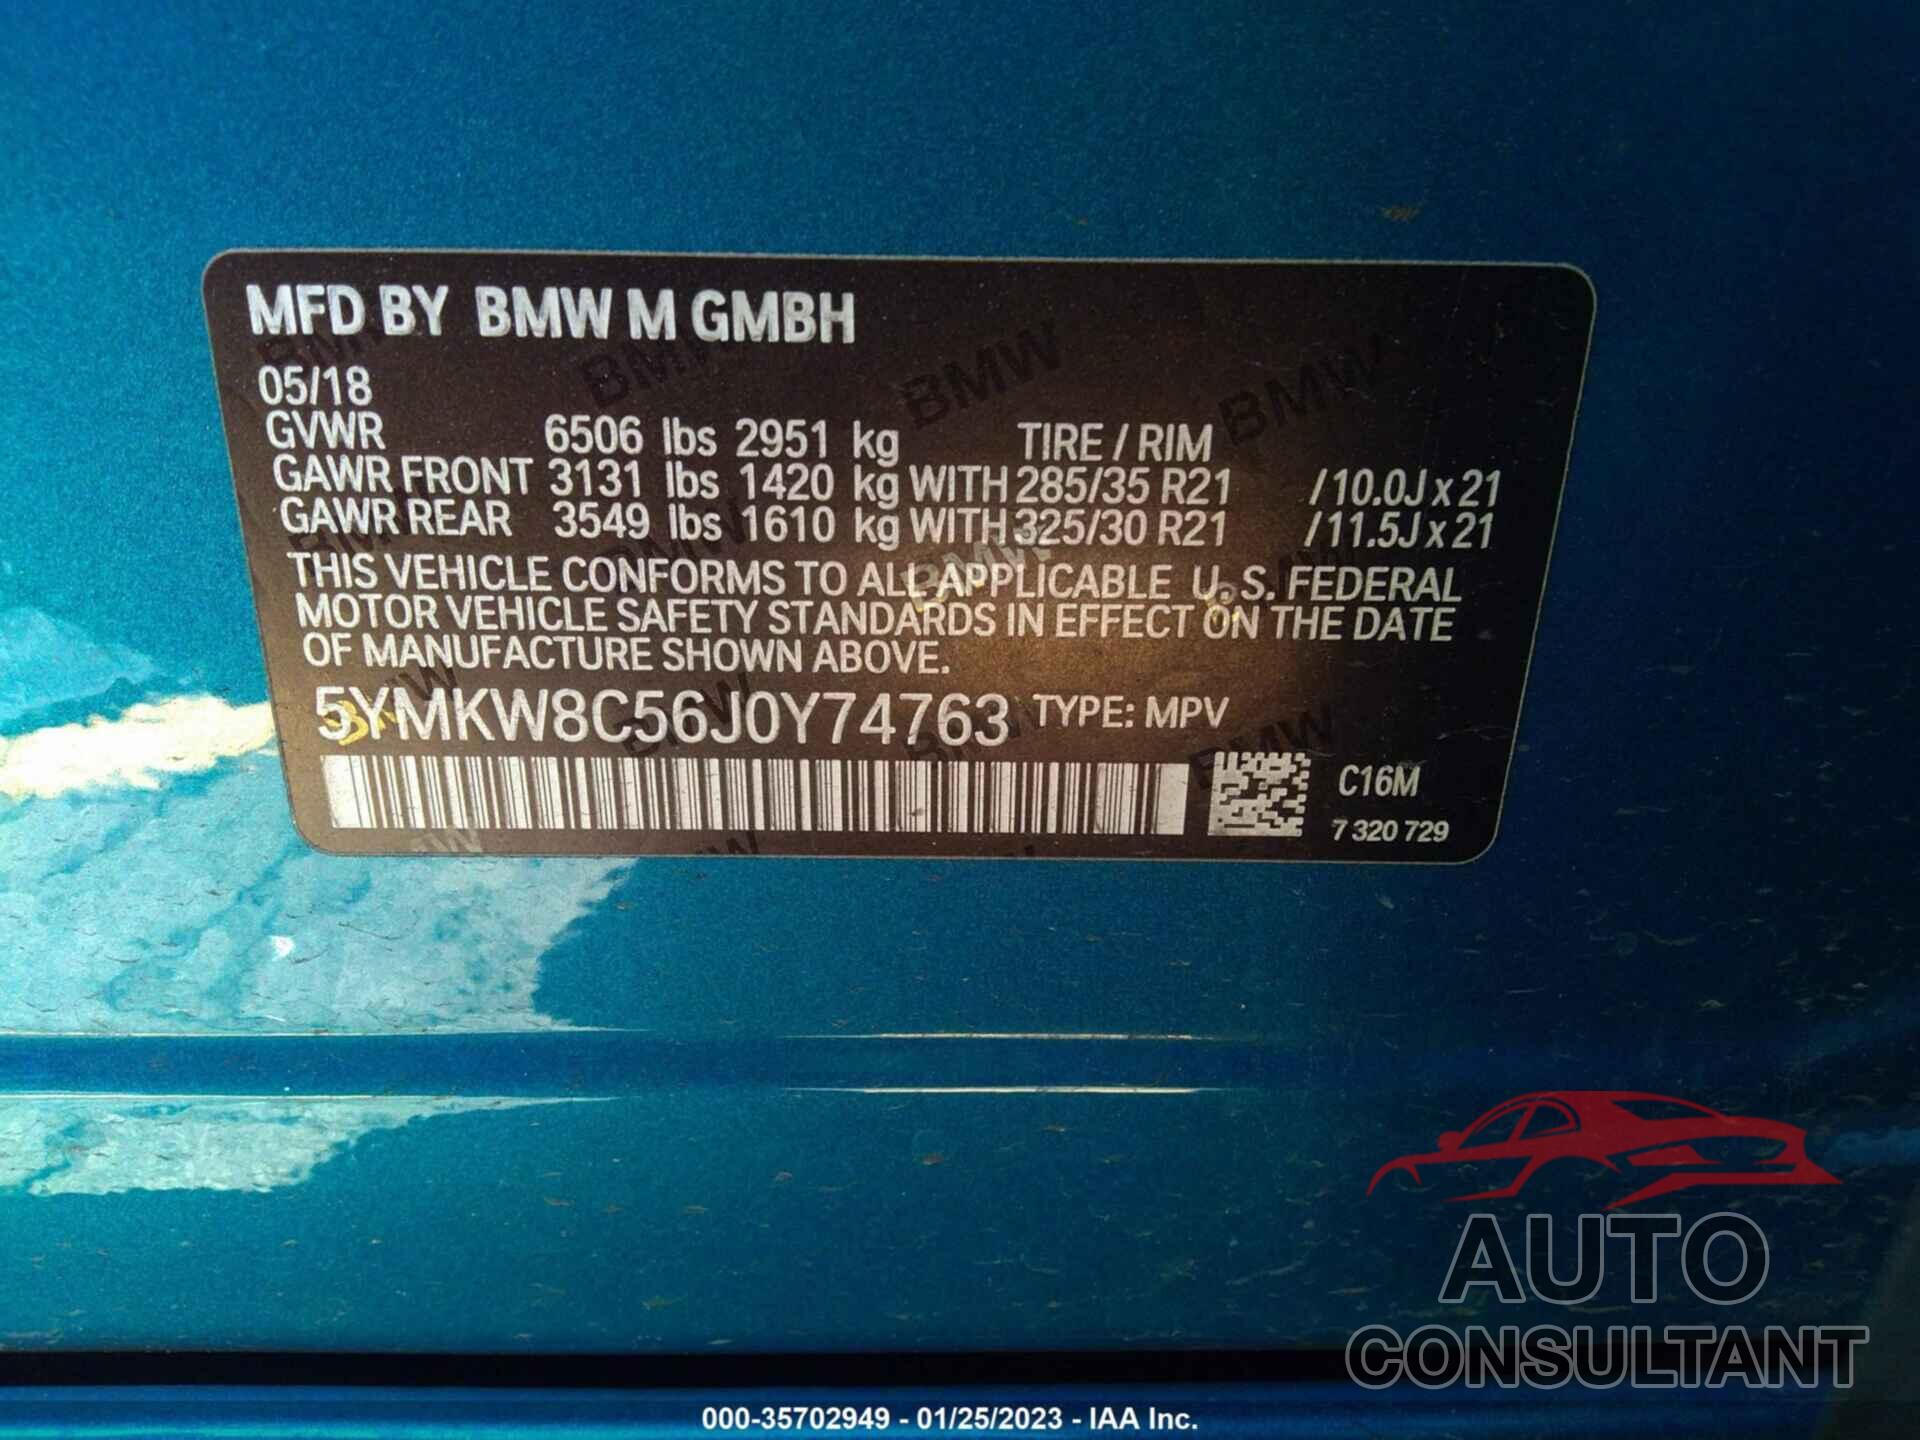 BMW X6 M 2018 - 5YMKW8C56J0Y74763